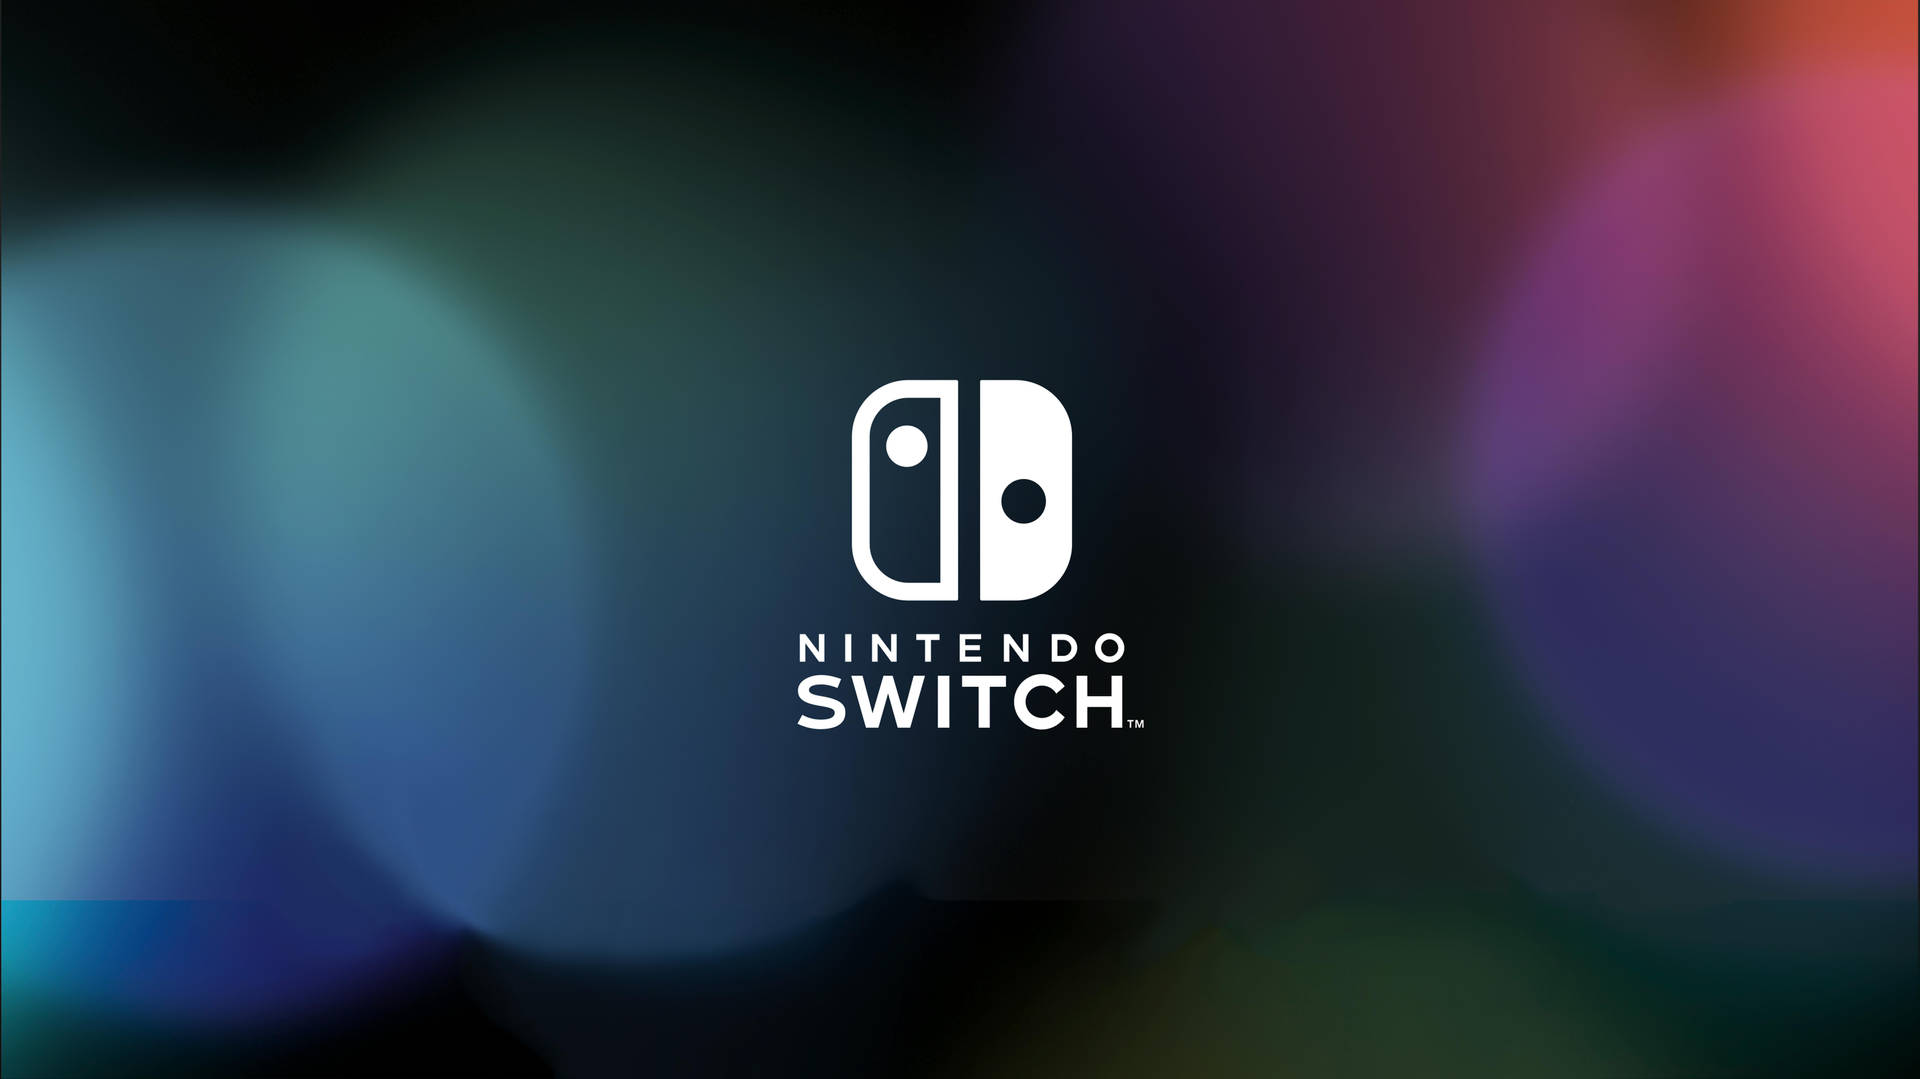 Nintendoswitch-logo Mit Unscharfem Hintergrund Wallpaper